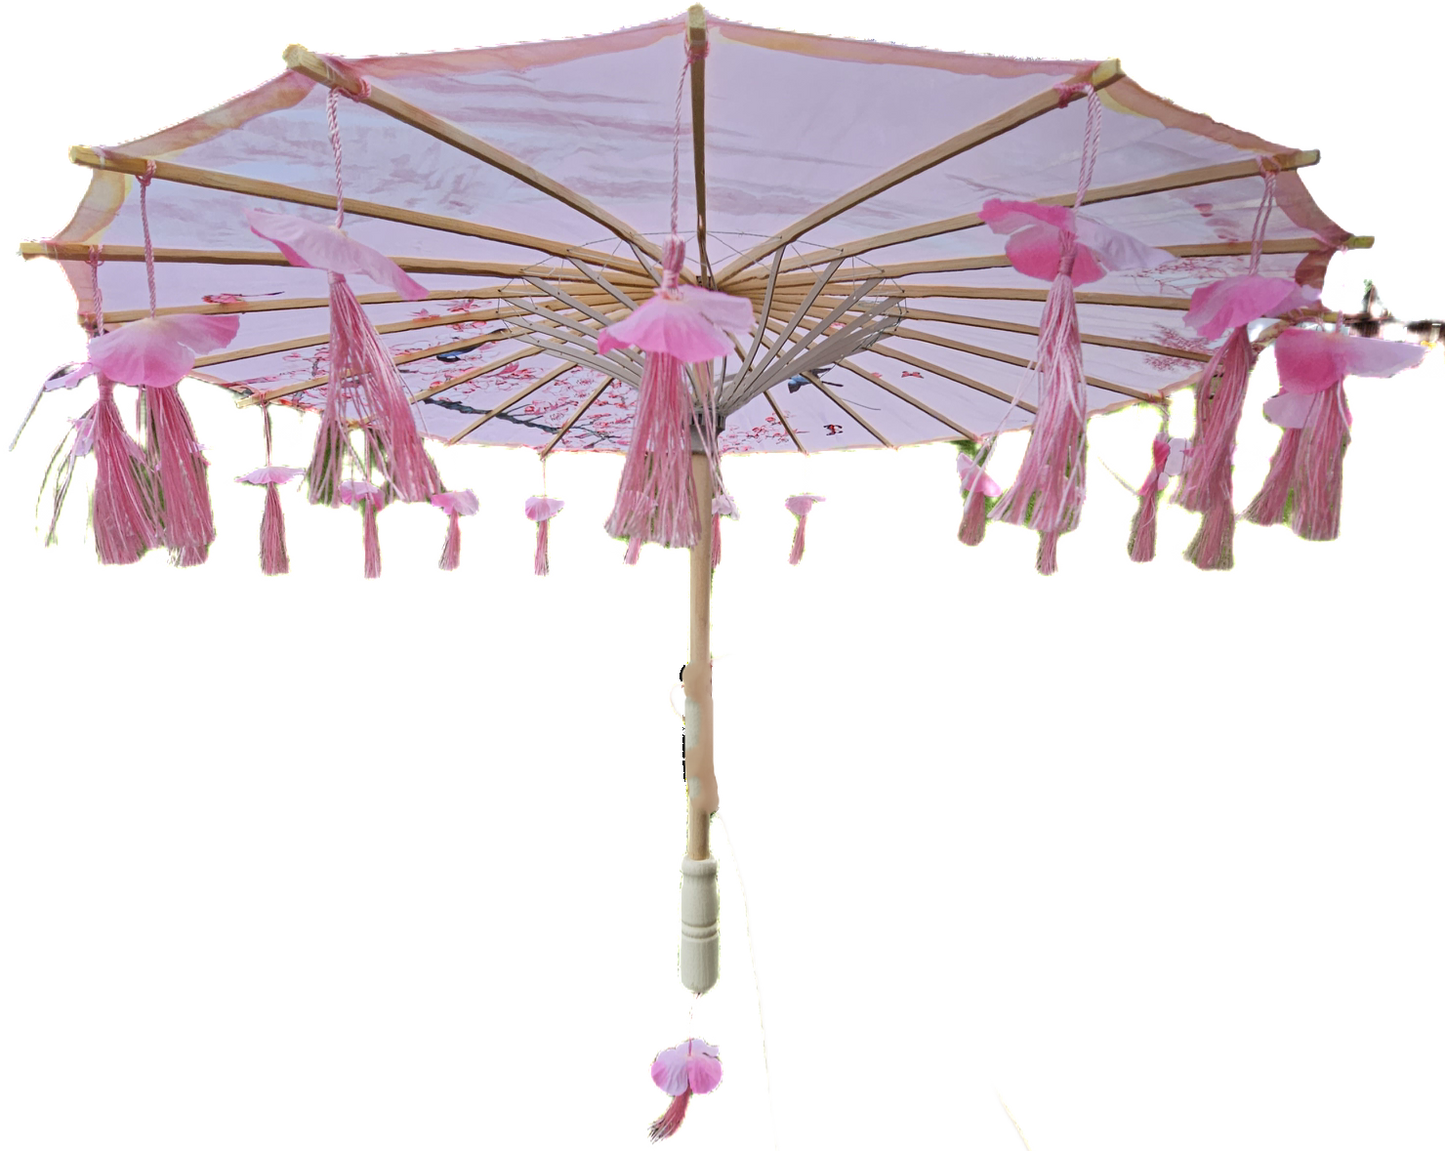 Cherry blossom parasol